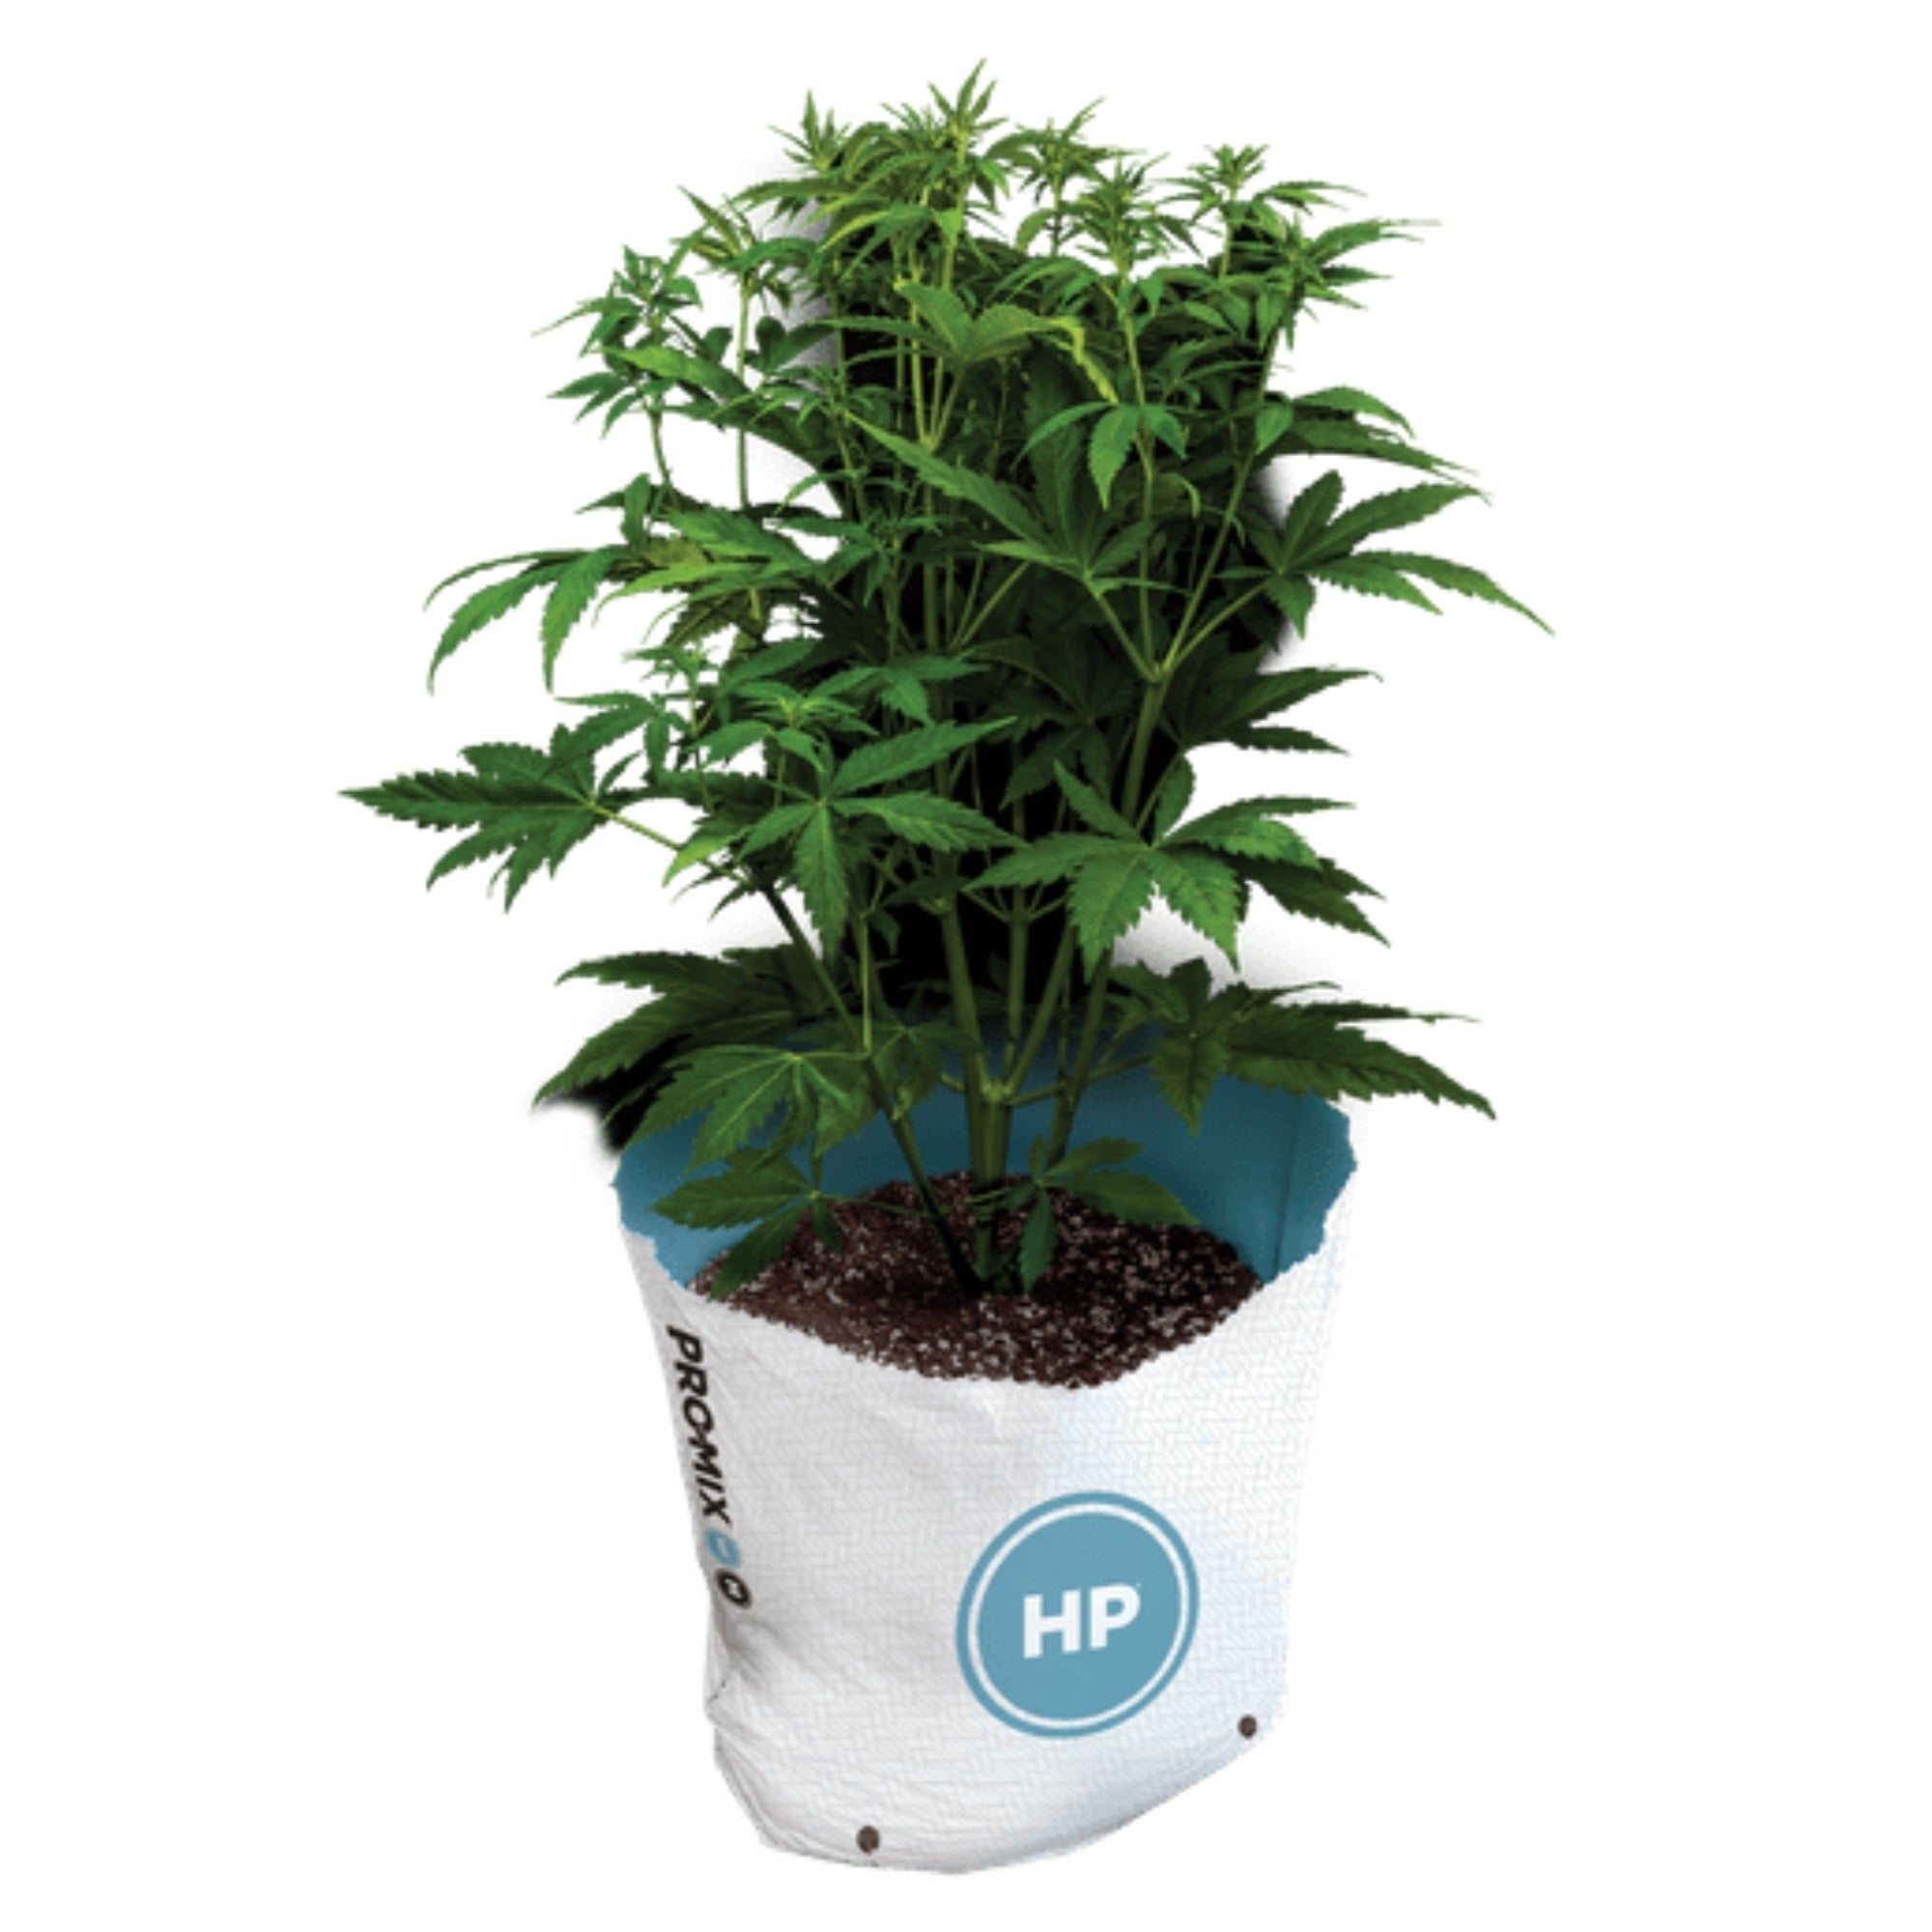 Pro-Mix HP Mycorrhizae Growing Medium Potting Soil, Open Top Grow Bag, 1 CF